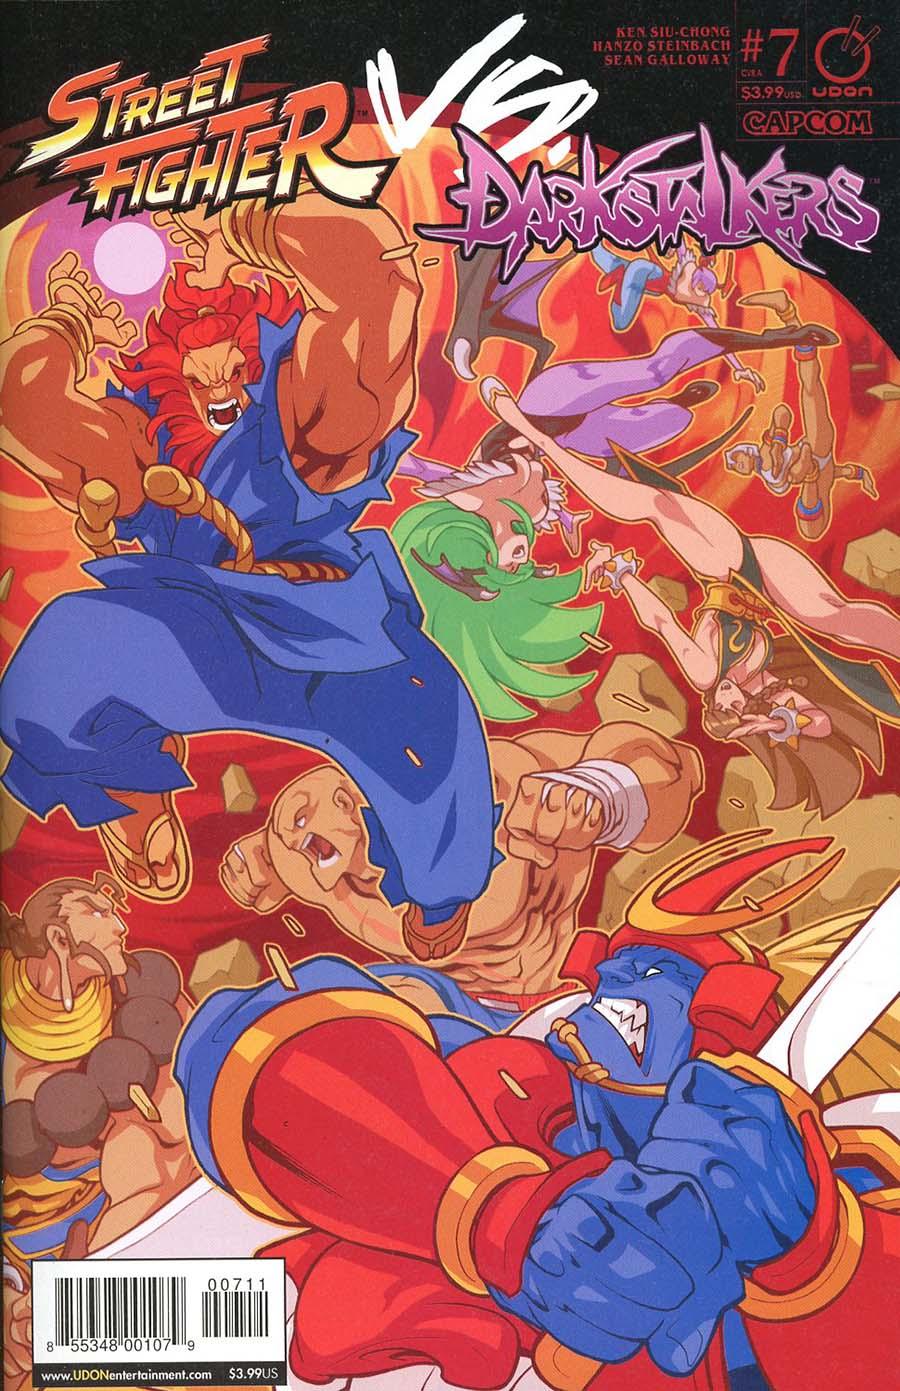 Street Fighter vs Darkstalkers Vol. 1 #7